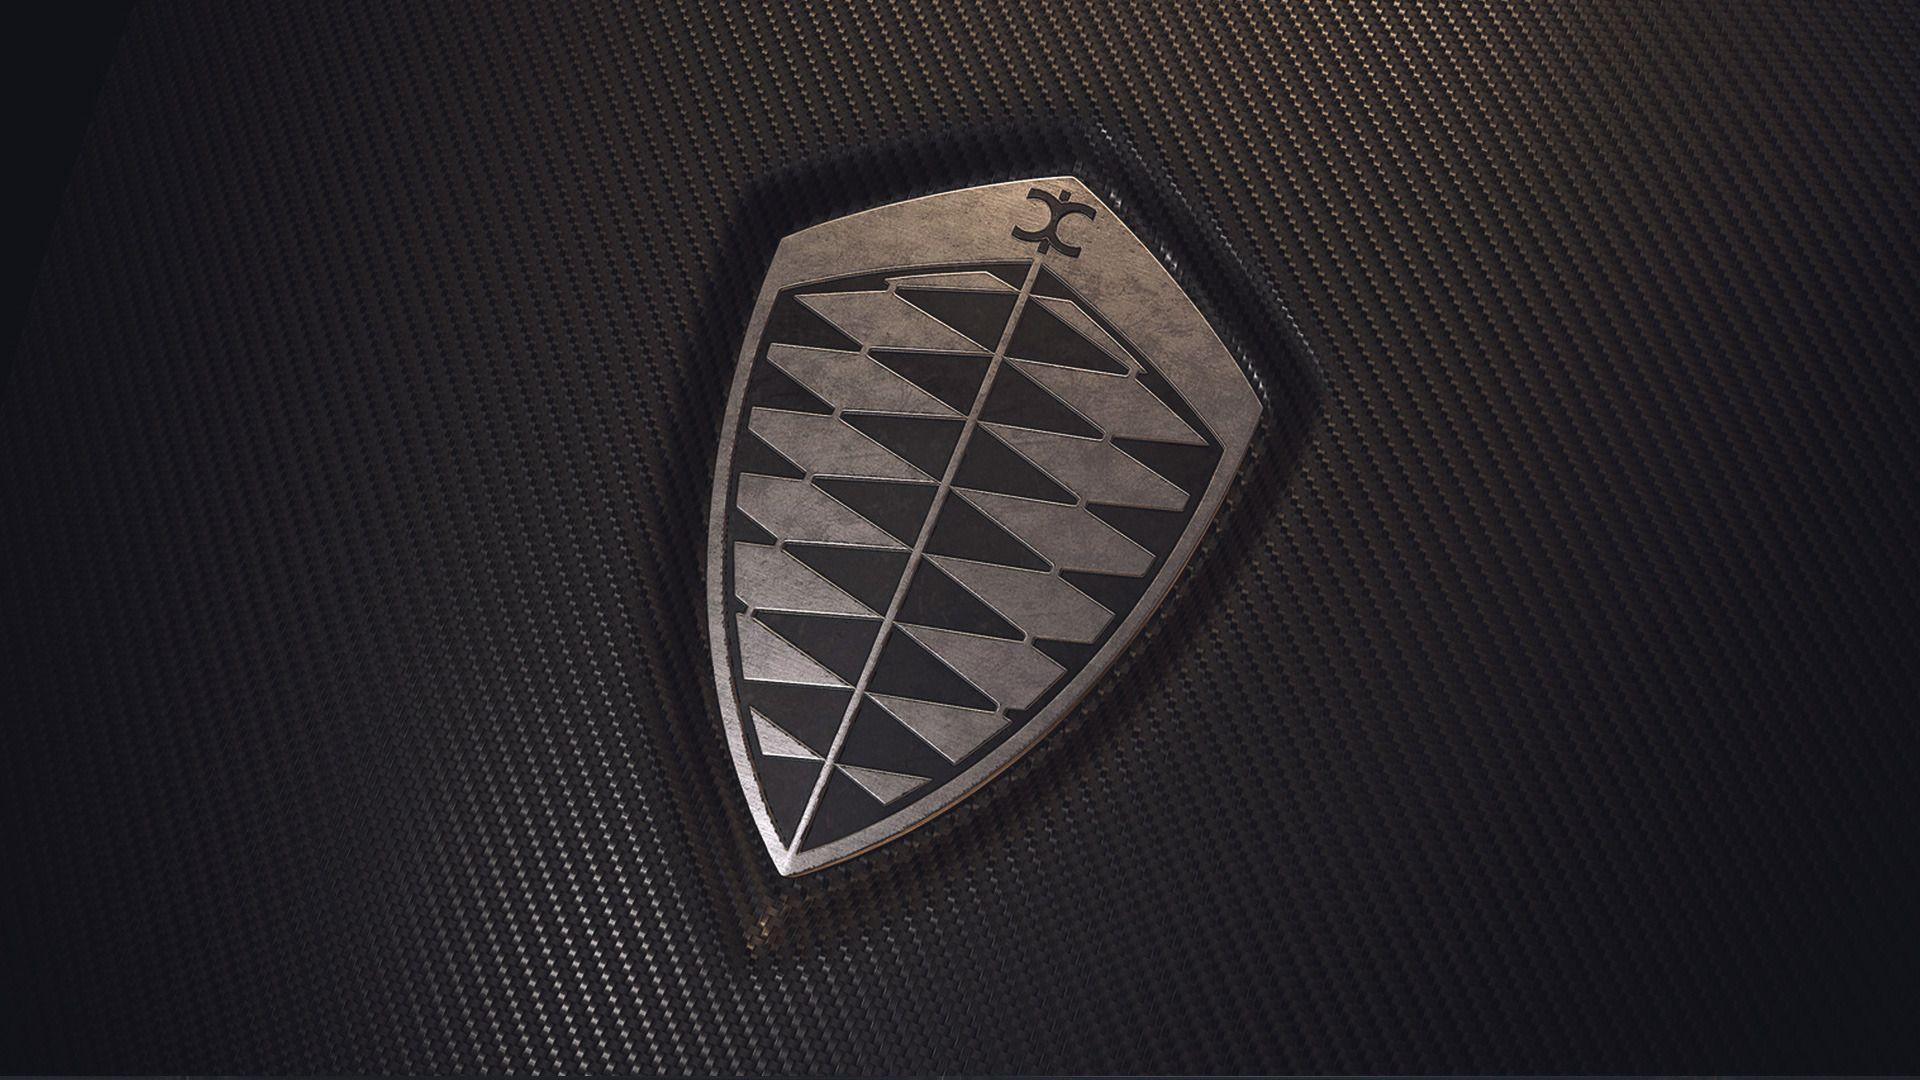 Koenigsegg News and Reviews